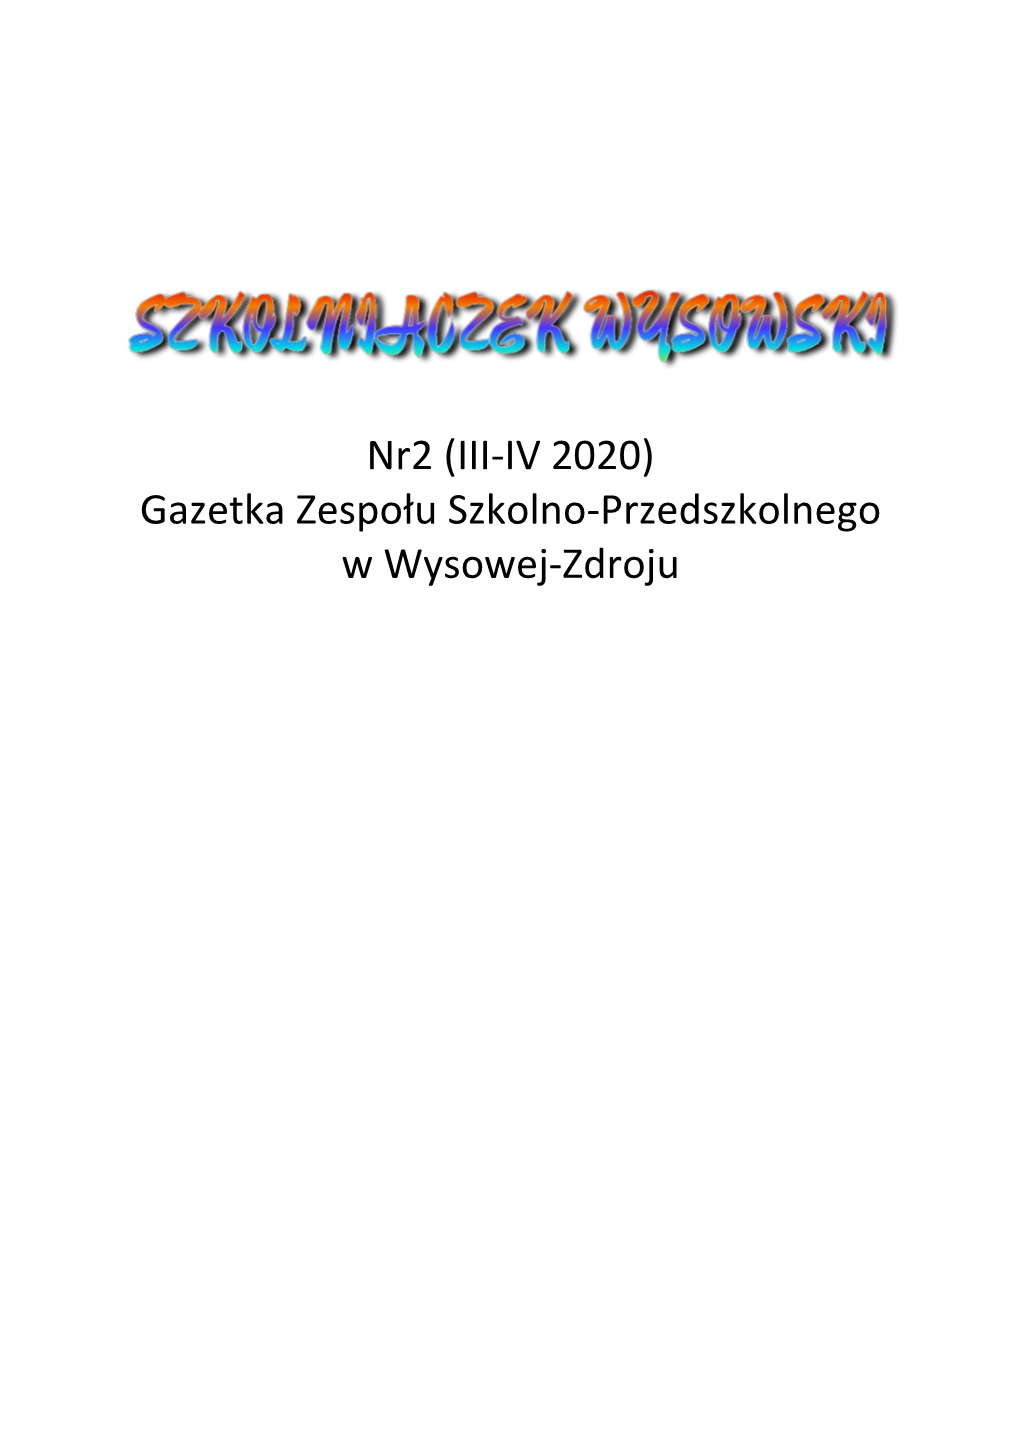 Nr2 (III-IV 2020) Gazetka Zespołu Szkolno-Przedszkolnego W Wysowej-Zdroju